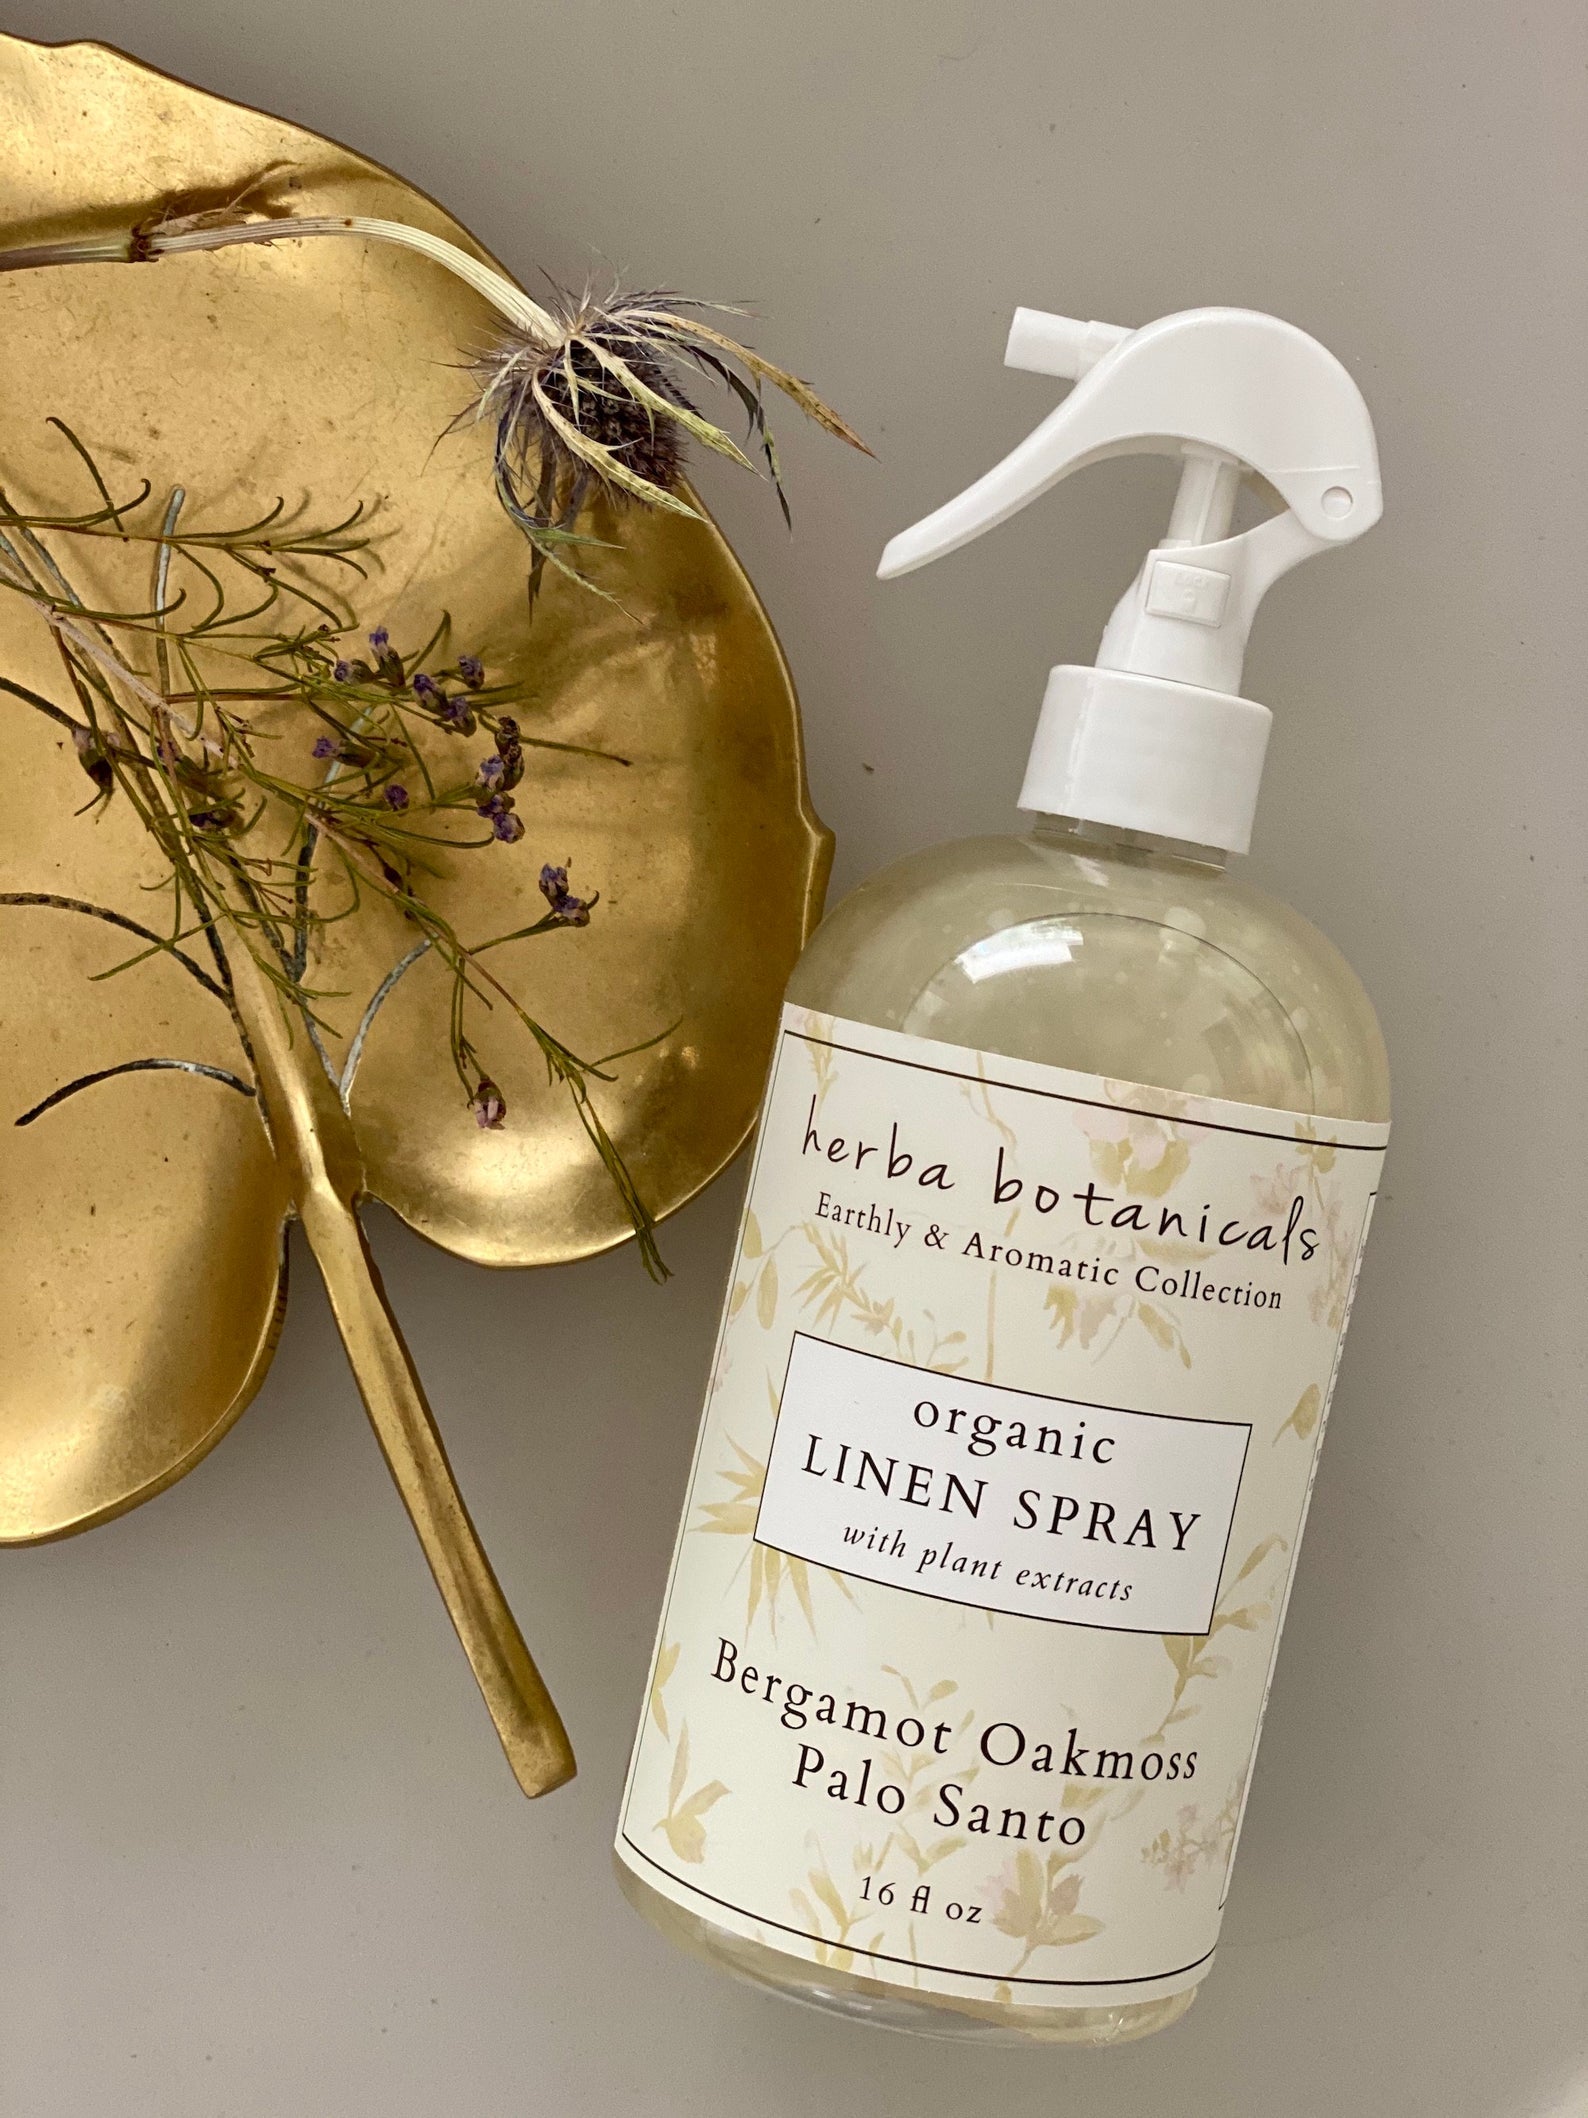 bottle of bergamot oakmoss scented linen spray